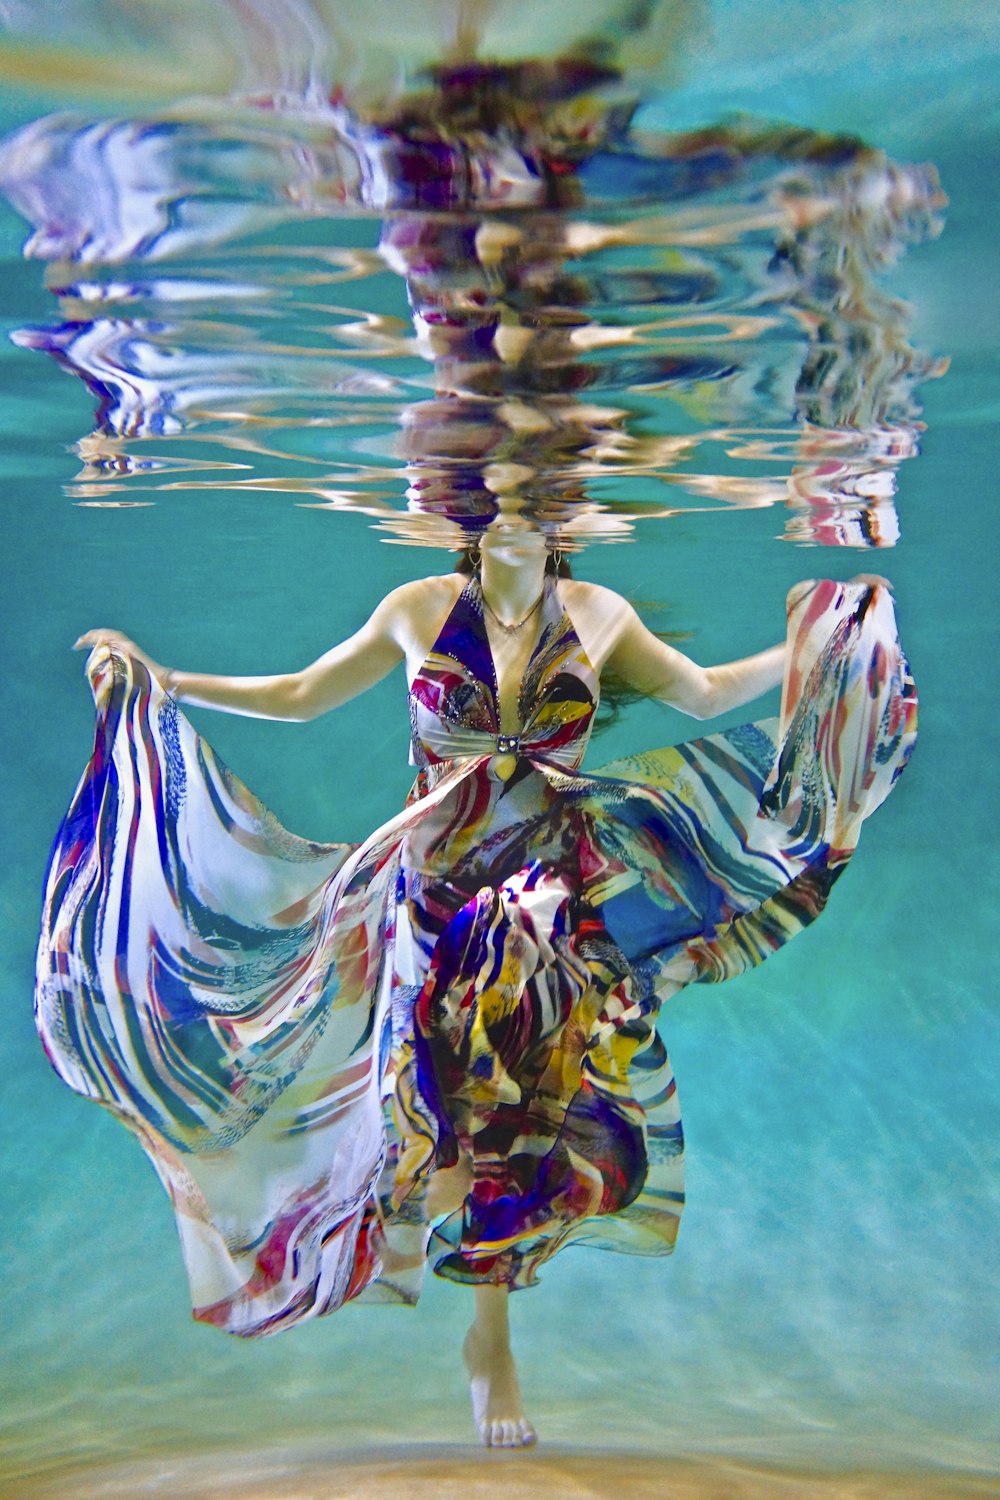 fotografia subaquática da mulher na natação do vestido